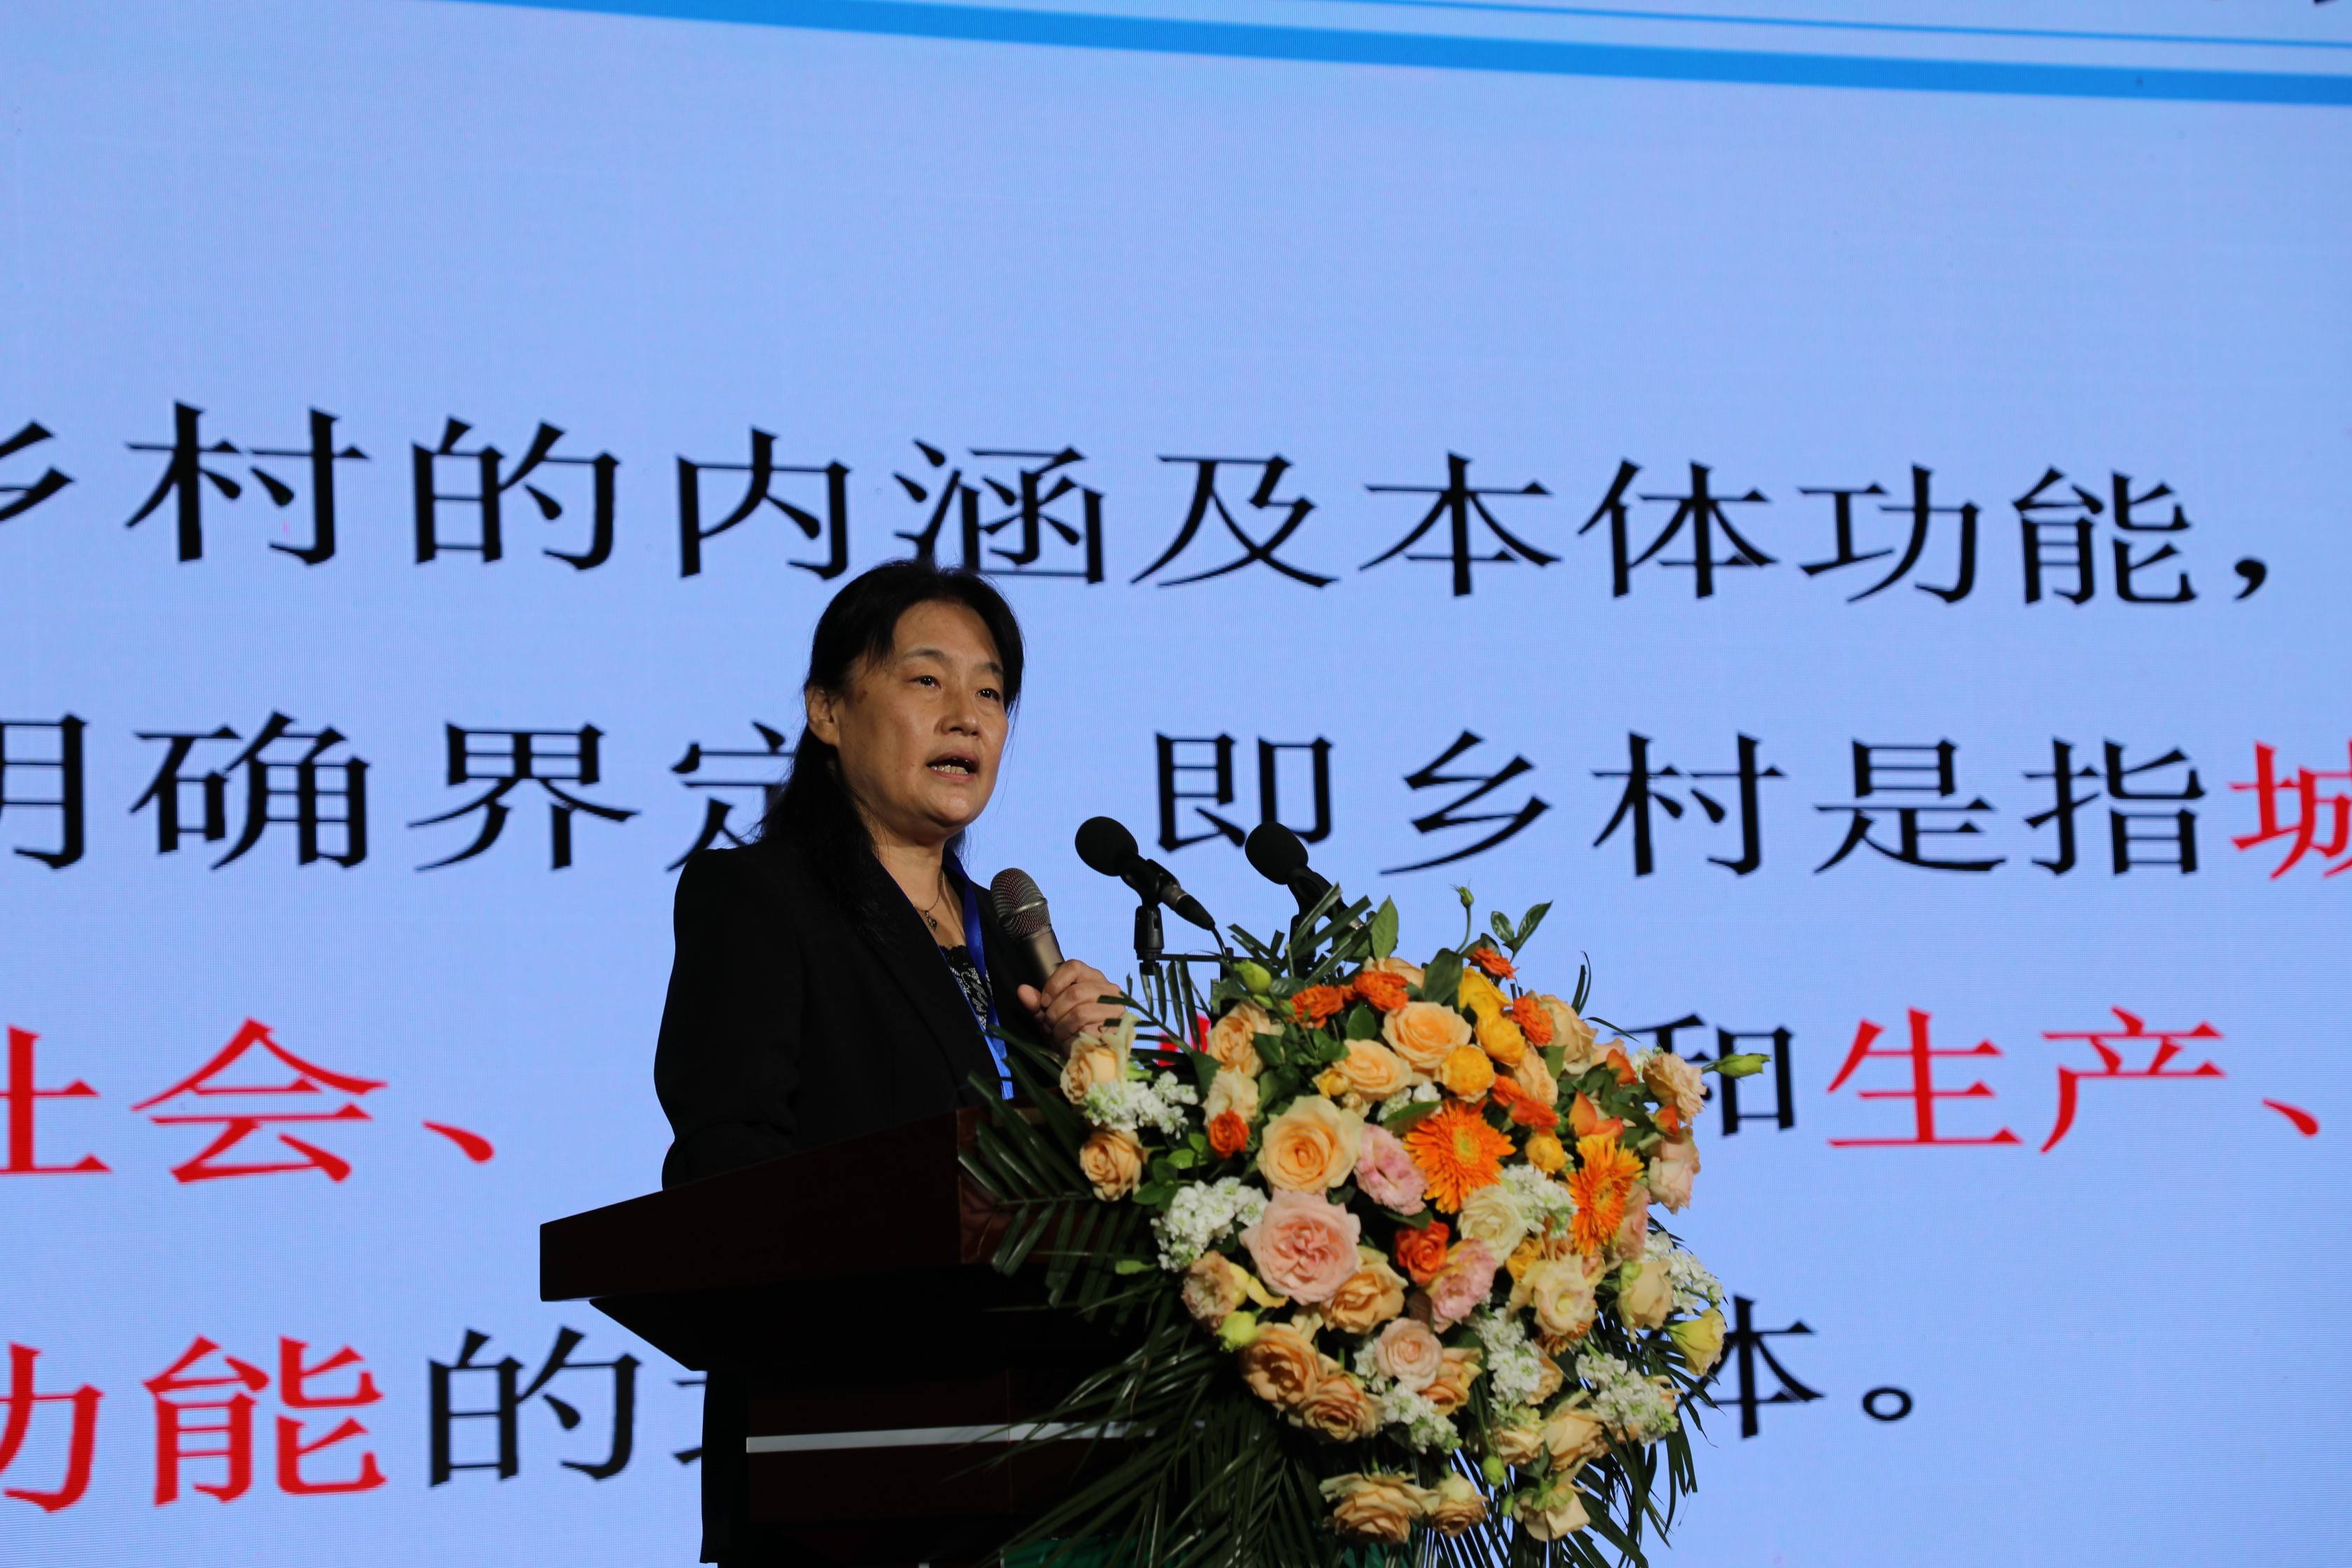 首届中国乡村文化产业创新发展大会在辽宁盘锦举办